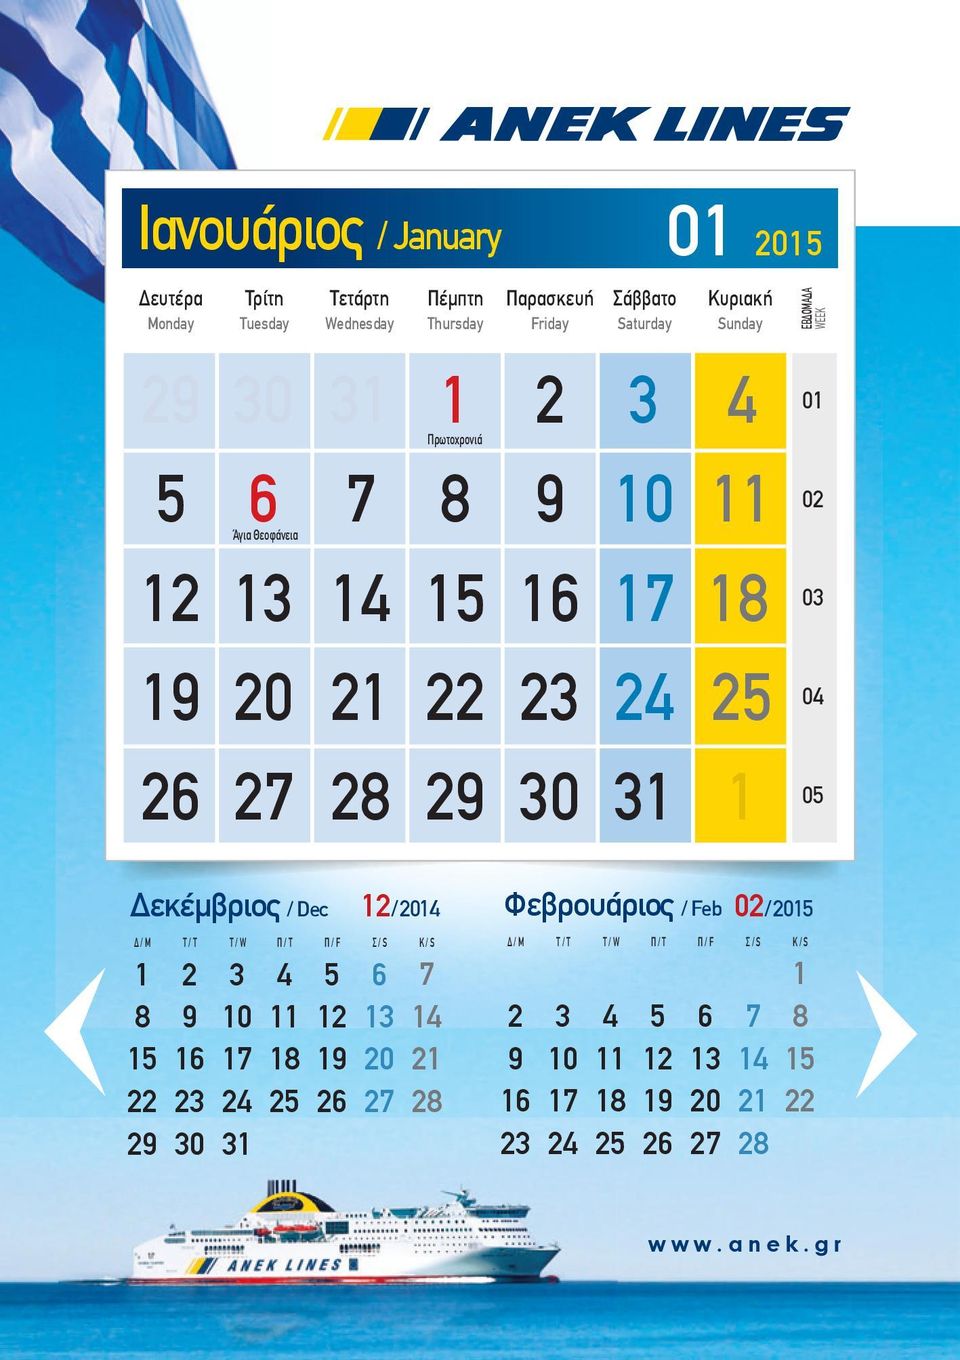 ΕΒΔΟΜΑΔΑ WEEK 0 0 Ιανουάριος / January 0 0 0 0 0 0 0 0 Άγια